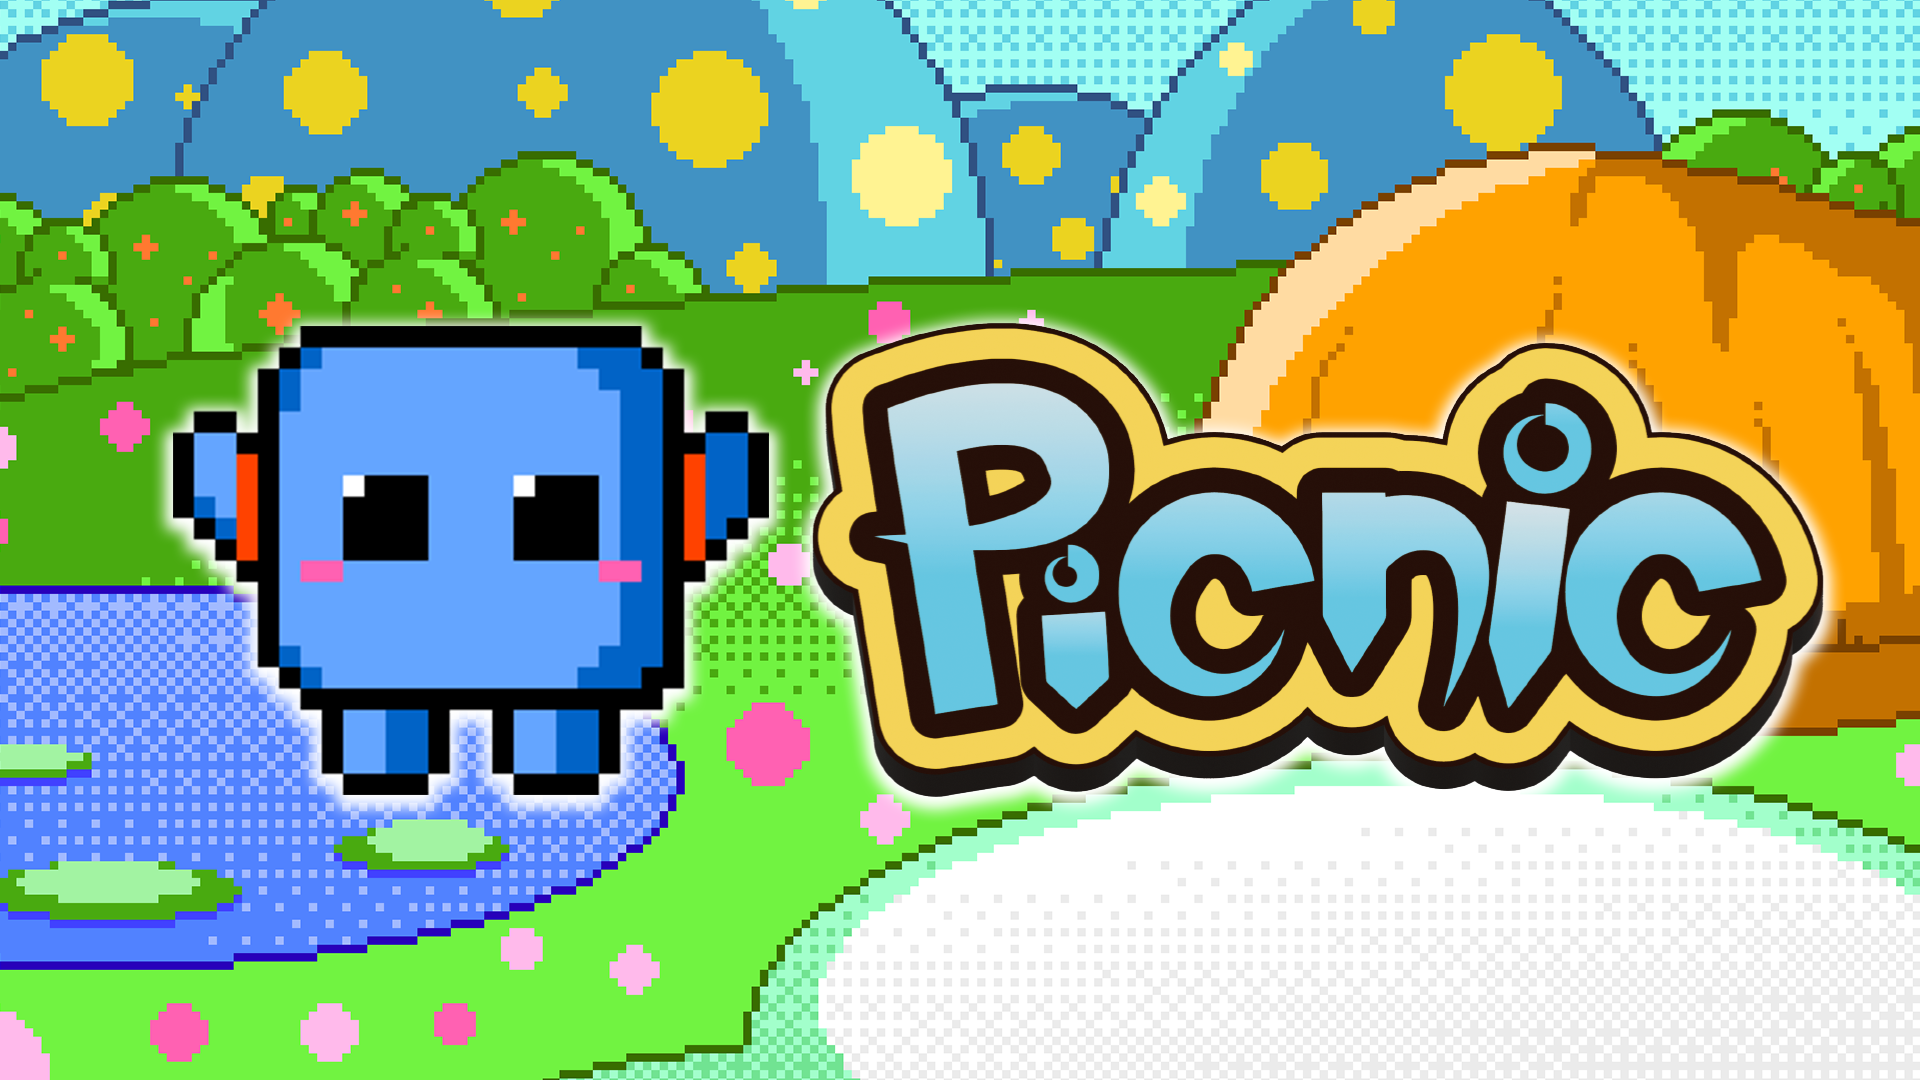 総合コンテンツサイト「竜平堂 (西野竜平)」のPC用ゲーム「Picnic」のバナー画像